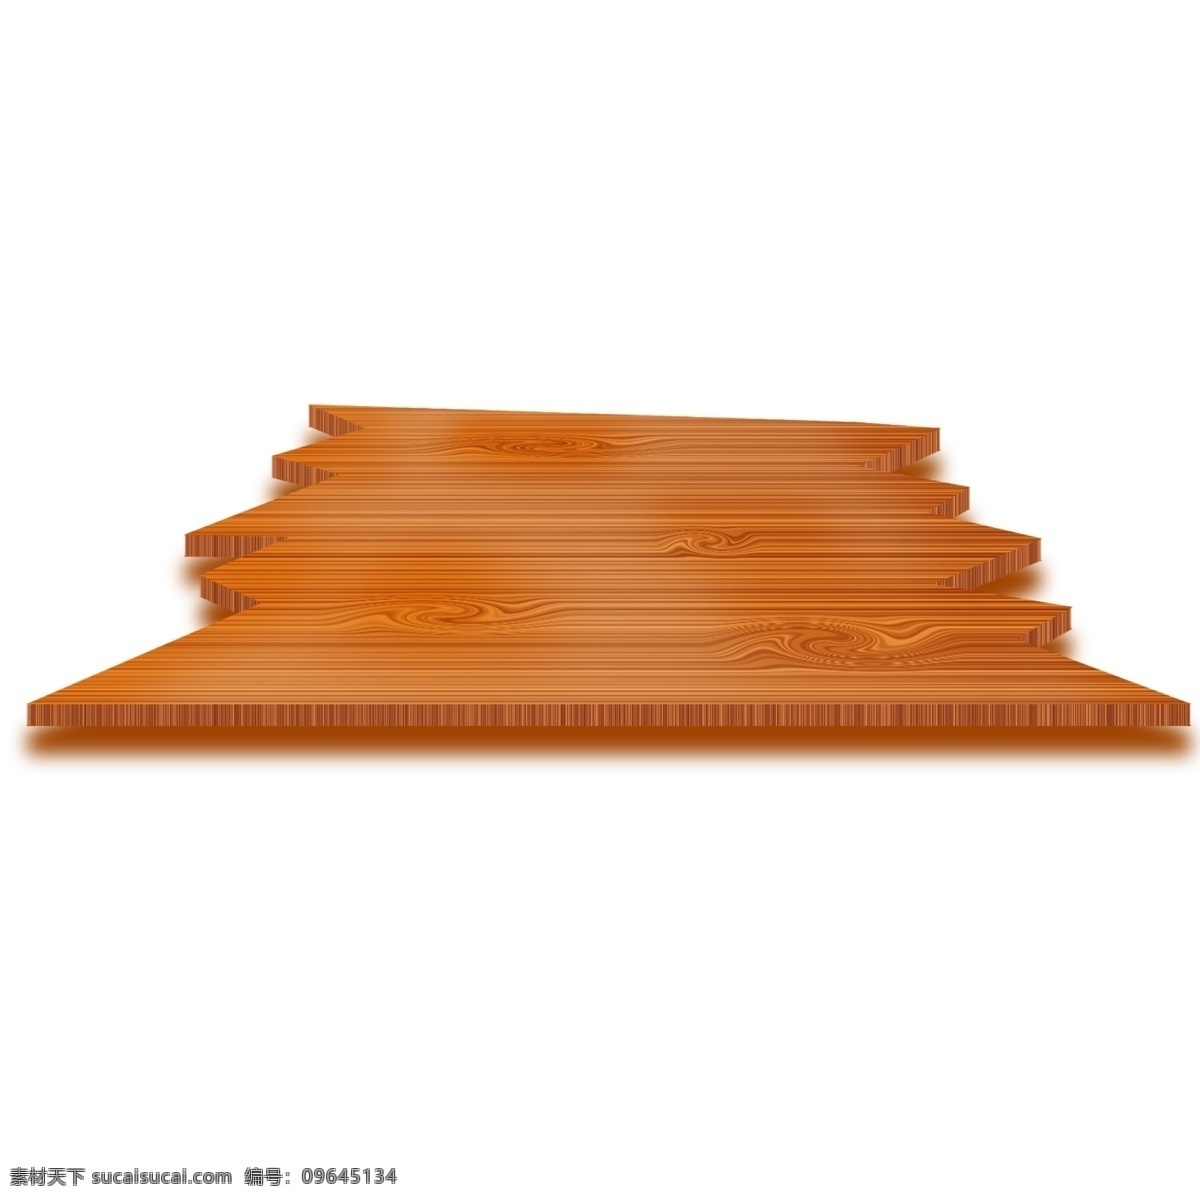 缺口 木质 木板 插画 缺口的木板 卡通插画 木板插画 木纹插画 木质插画 实木产品 条状的木板